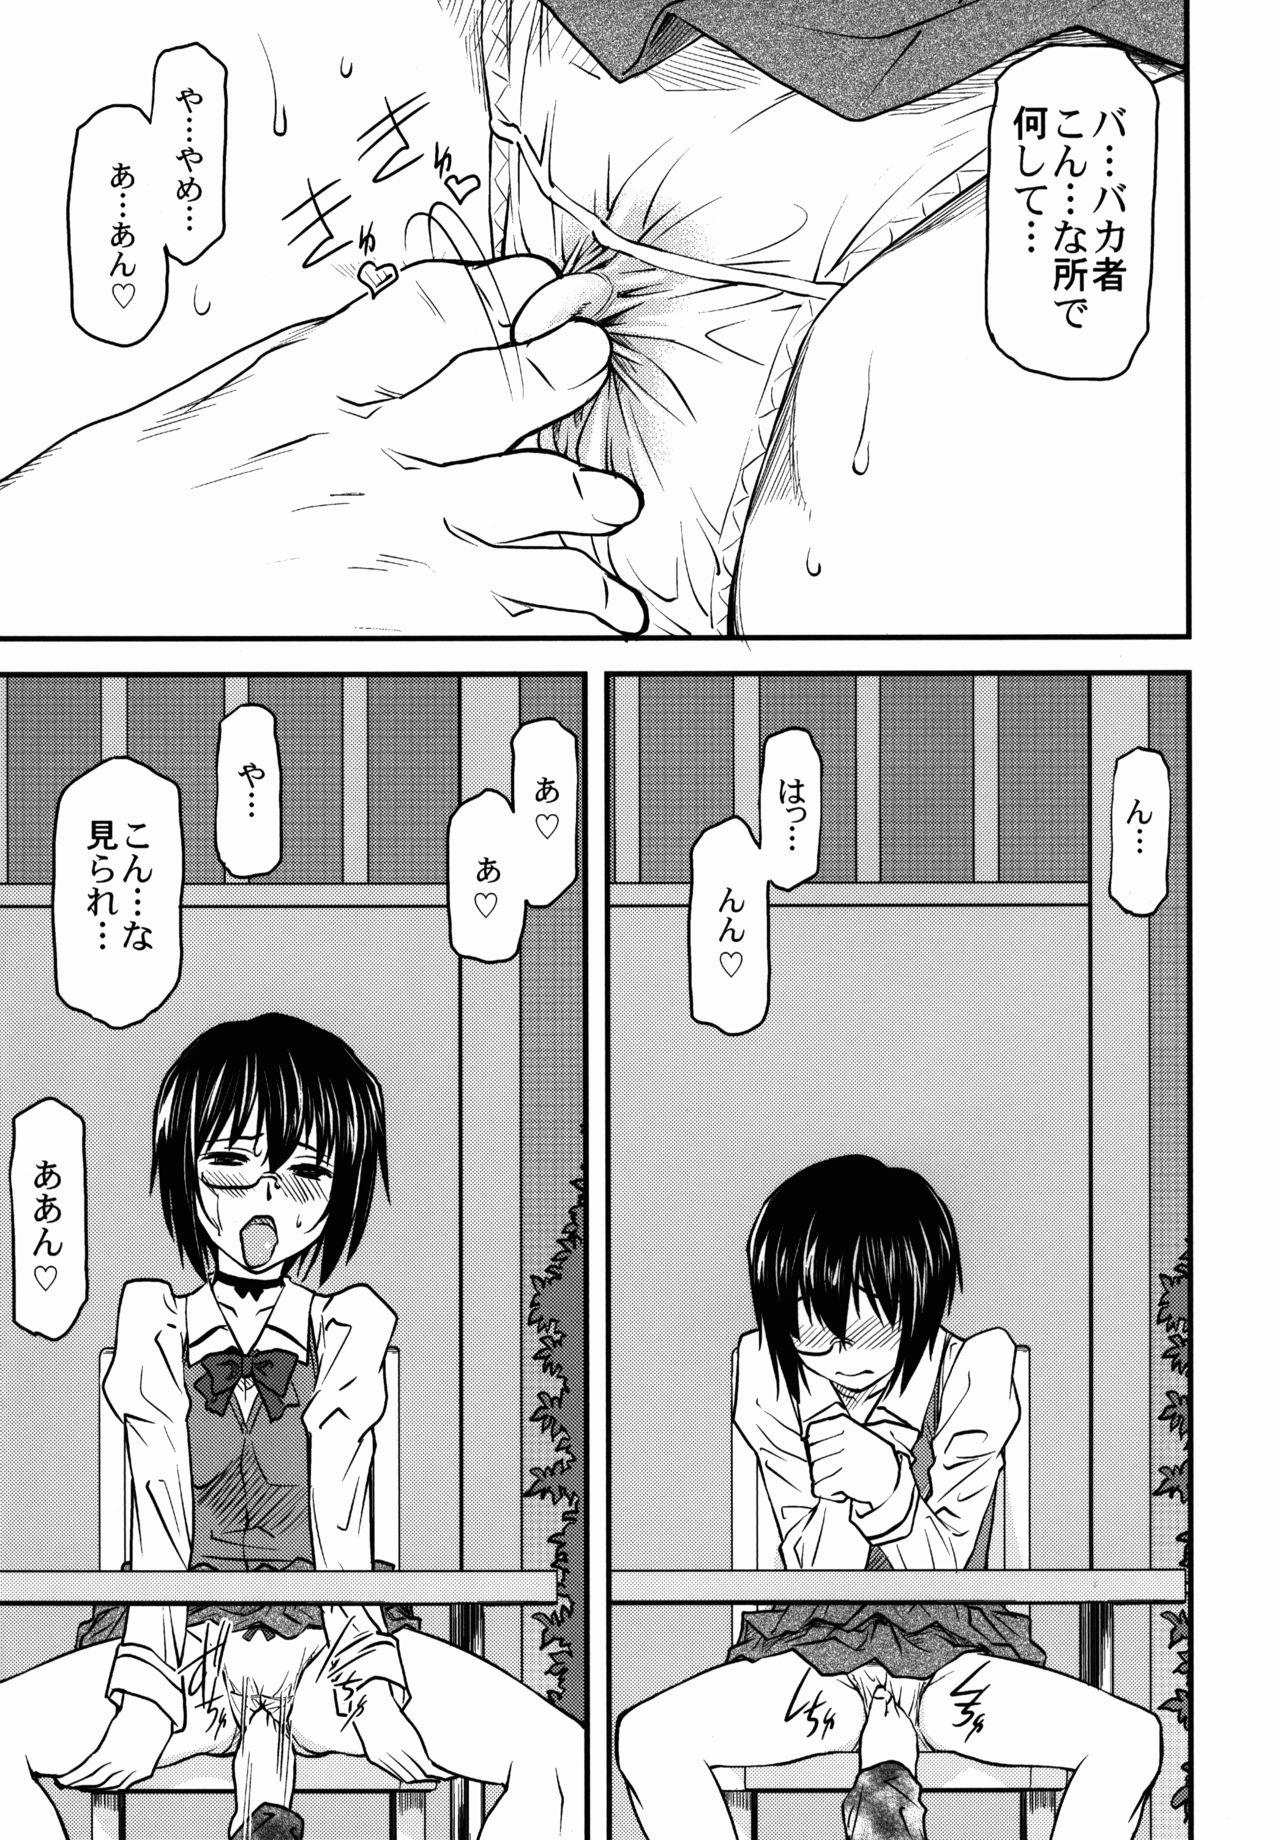 Sister (C87) [Leaf Party (Byakurou, Nagare Ippon)] LeLe Pappa Vol. 26 - Momo-chan wa Choroin (Girls und Panzer) - Girls und panzer Flashing - Page 7